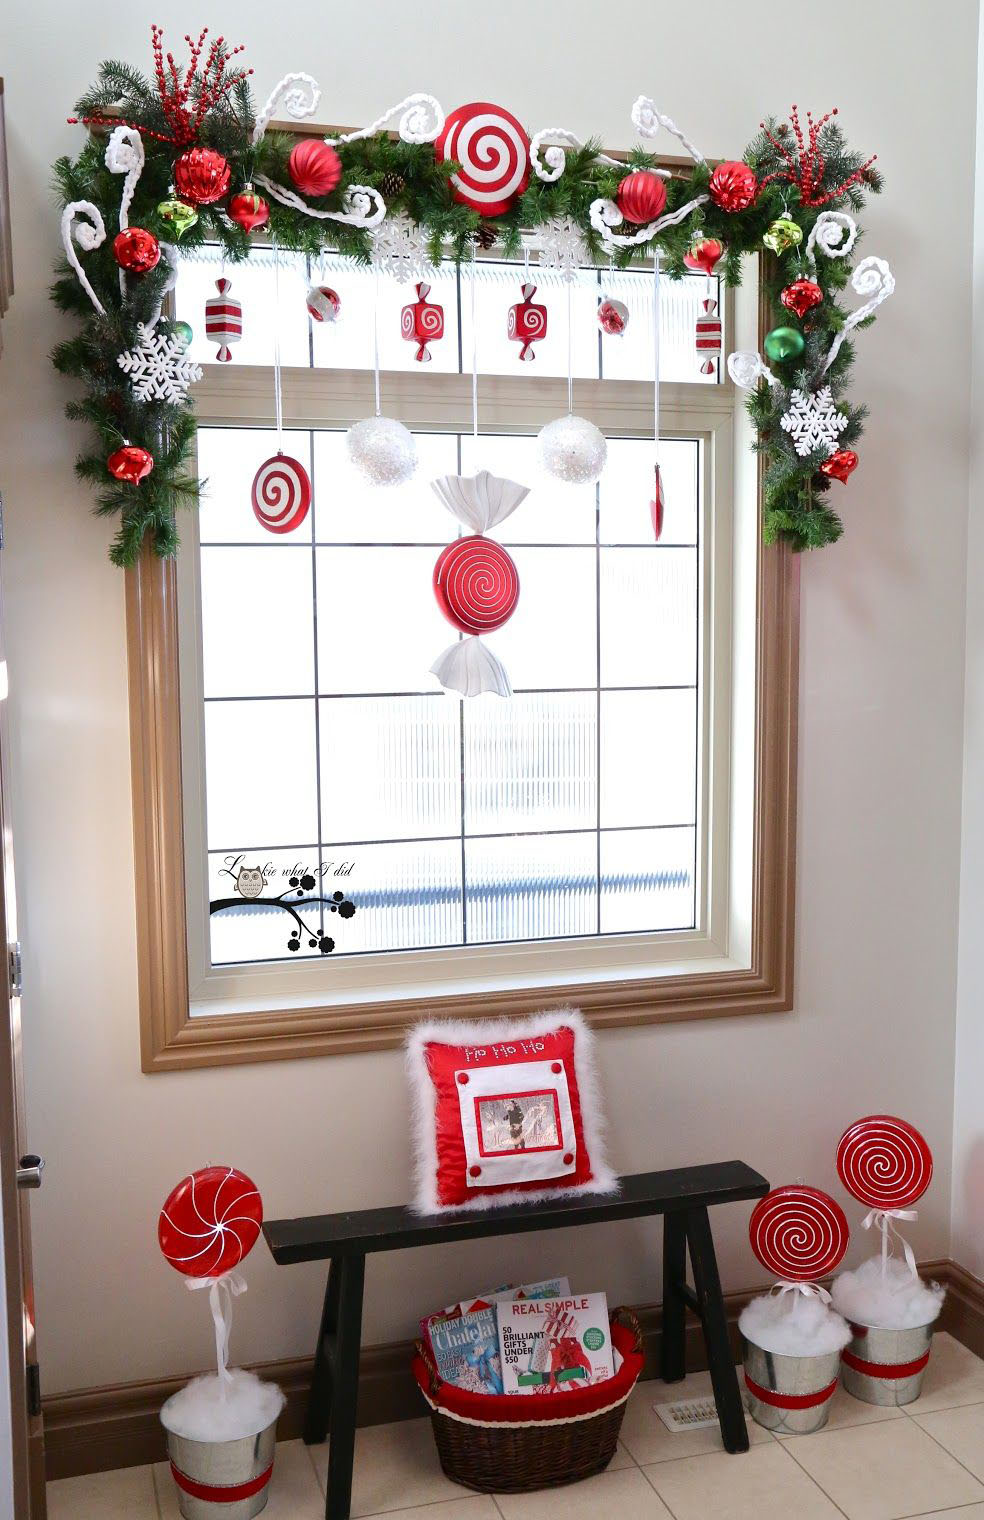 Mùa Giáng Sinh đã đến rồi! Hãy trang trí cho ngôi nhà của bạn thêm phần sinh động với cửa kính được thắp sáng bởi đèn LED màu sắc tuyệt đẹp. Bạn có thể dùng đồ trang trí, hoa giả và những bông tuyết để tạo nên không khí ấm áp nhưng cũng rất trang trí. Hãy tận hưởng mùa Giáng Sinh đầy ắp yêu thương và hạnh phúc.